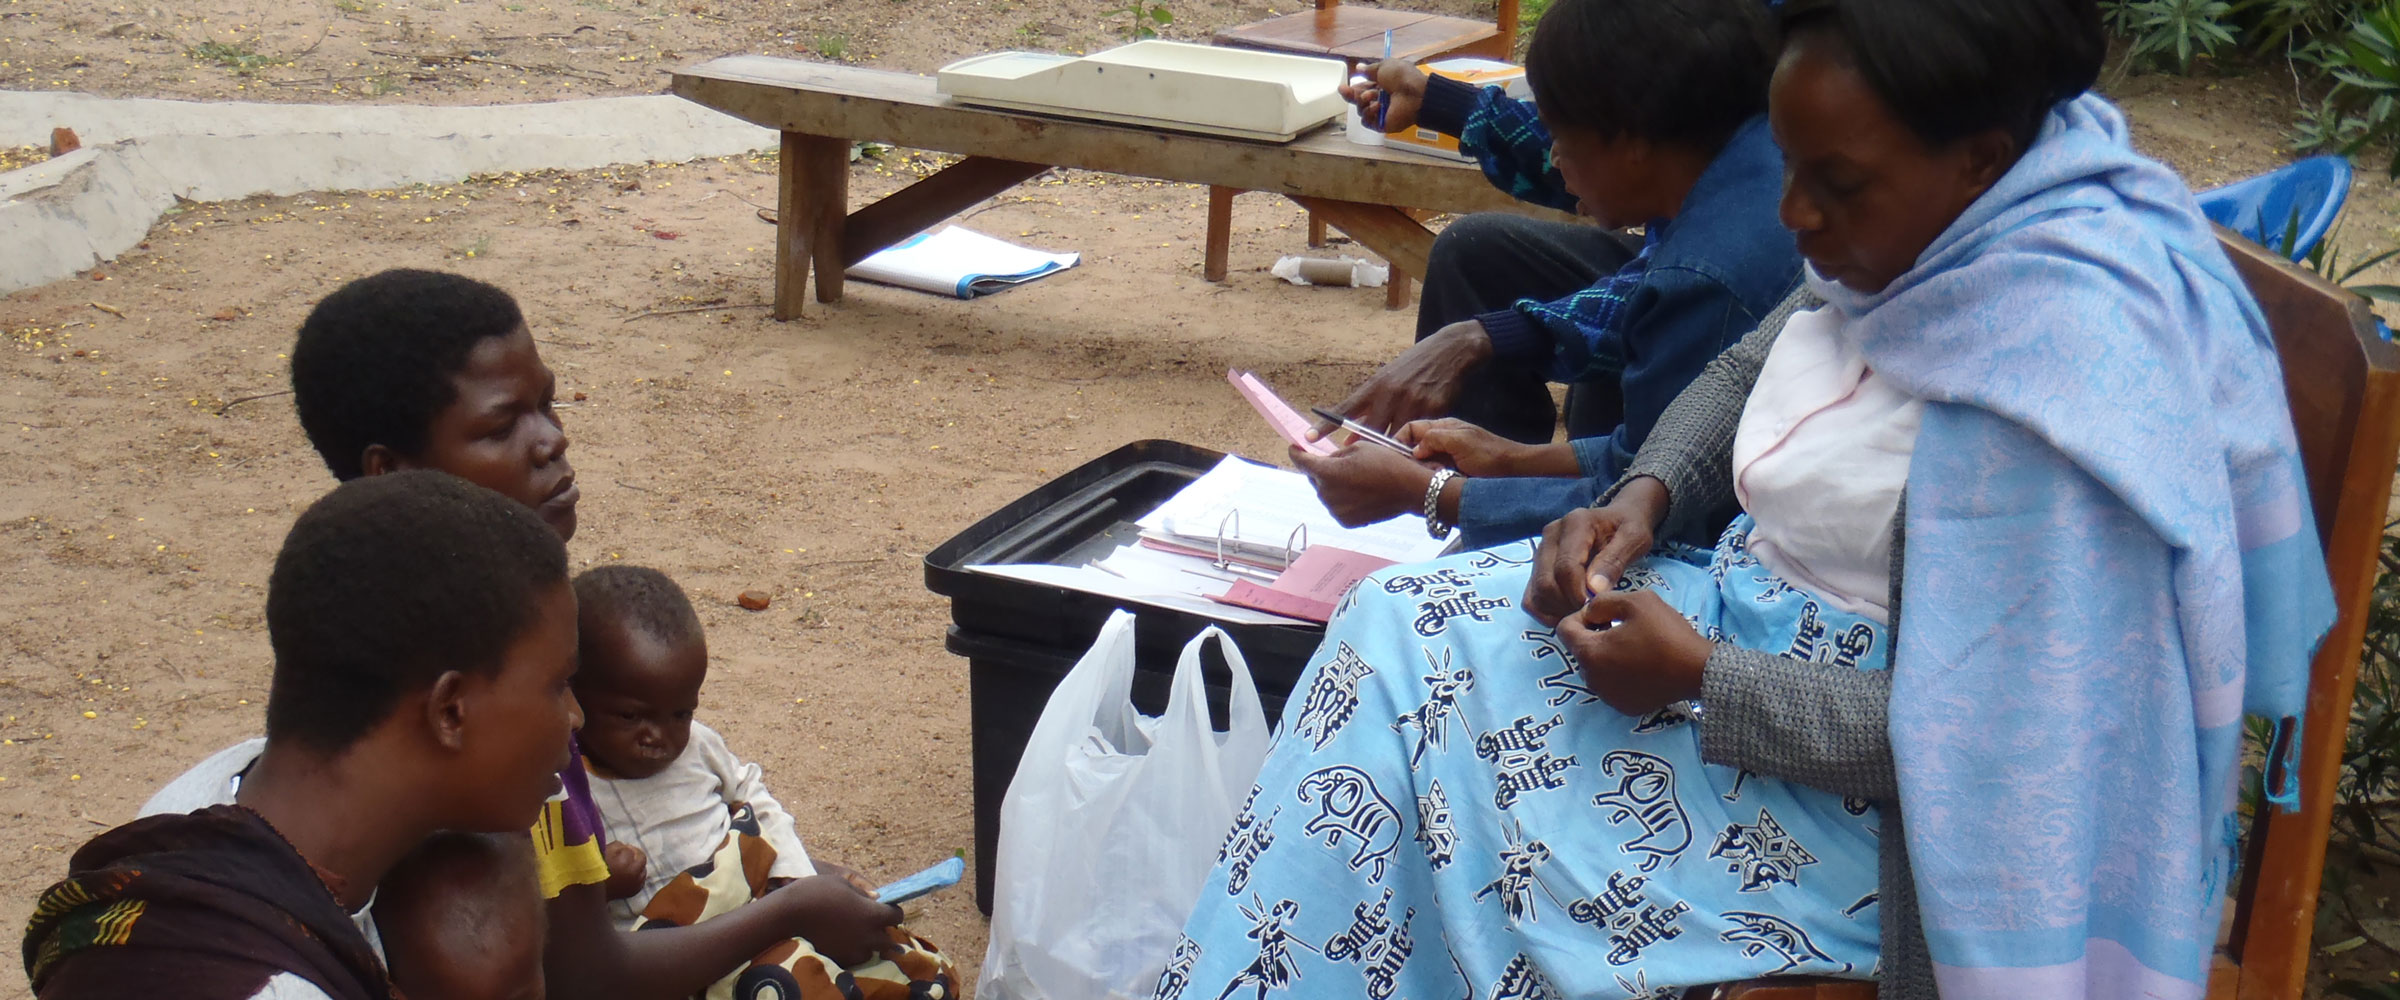 Madres y niños de país africano con asistente social